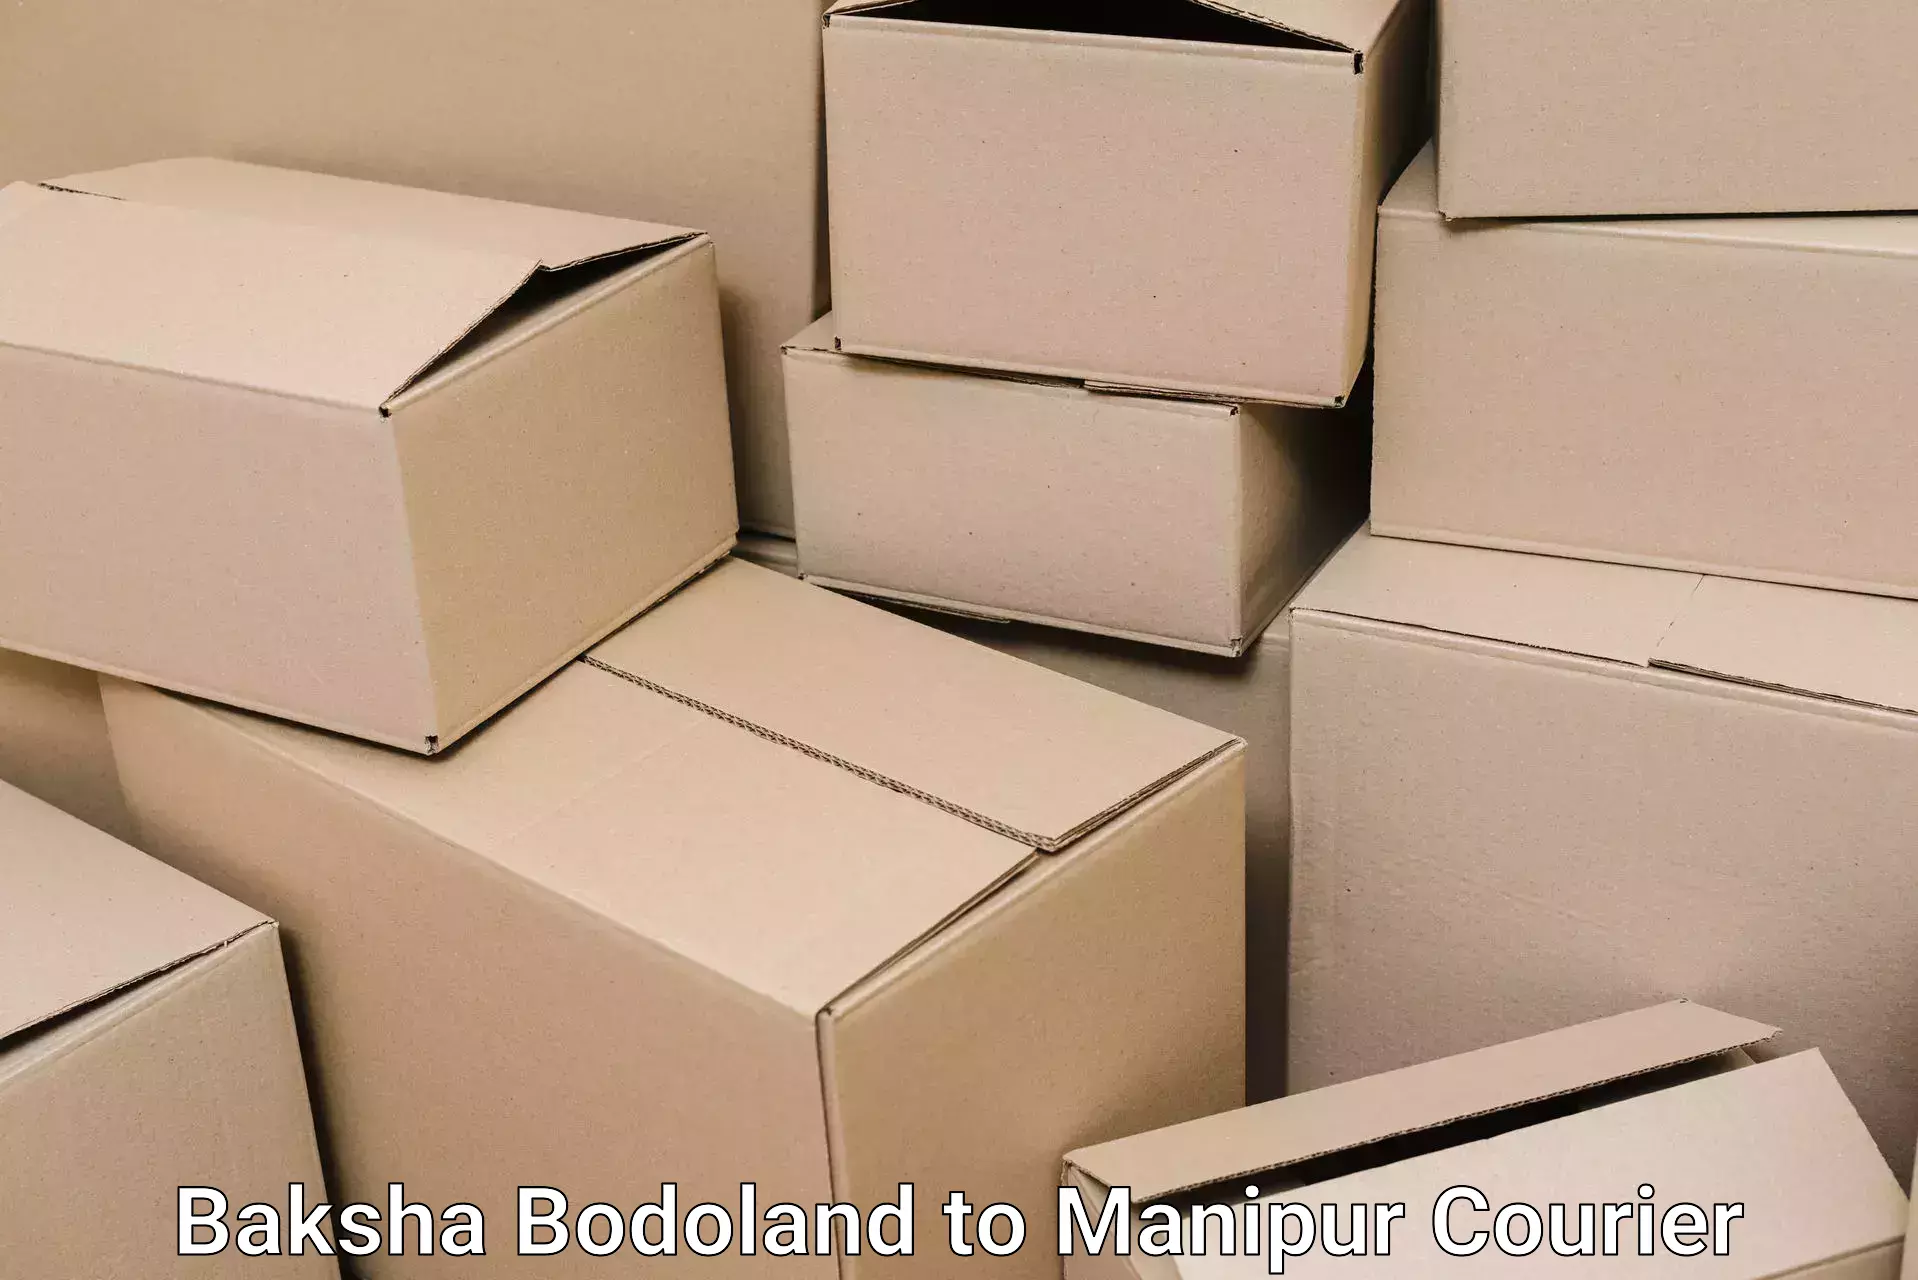 Household goods transport service Baksha Bodoland to Manipur